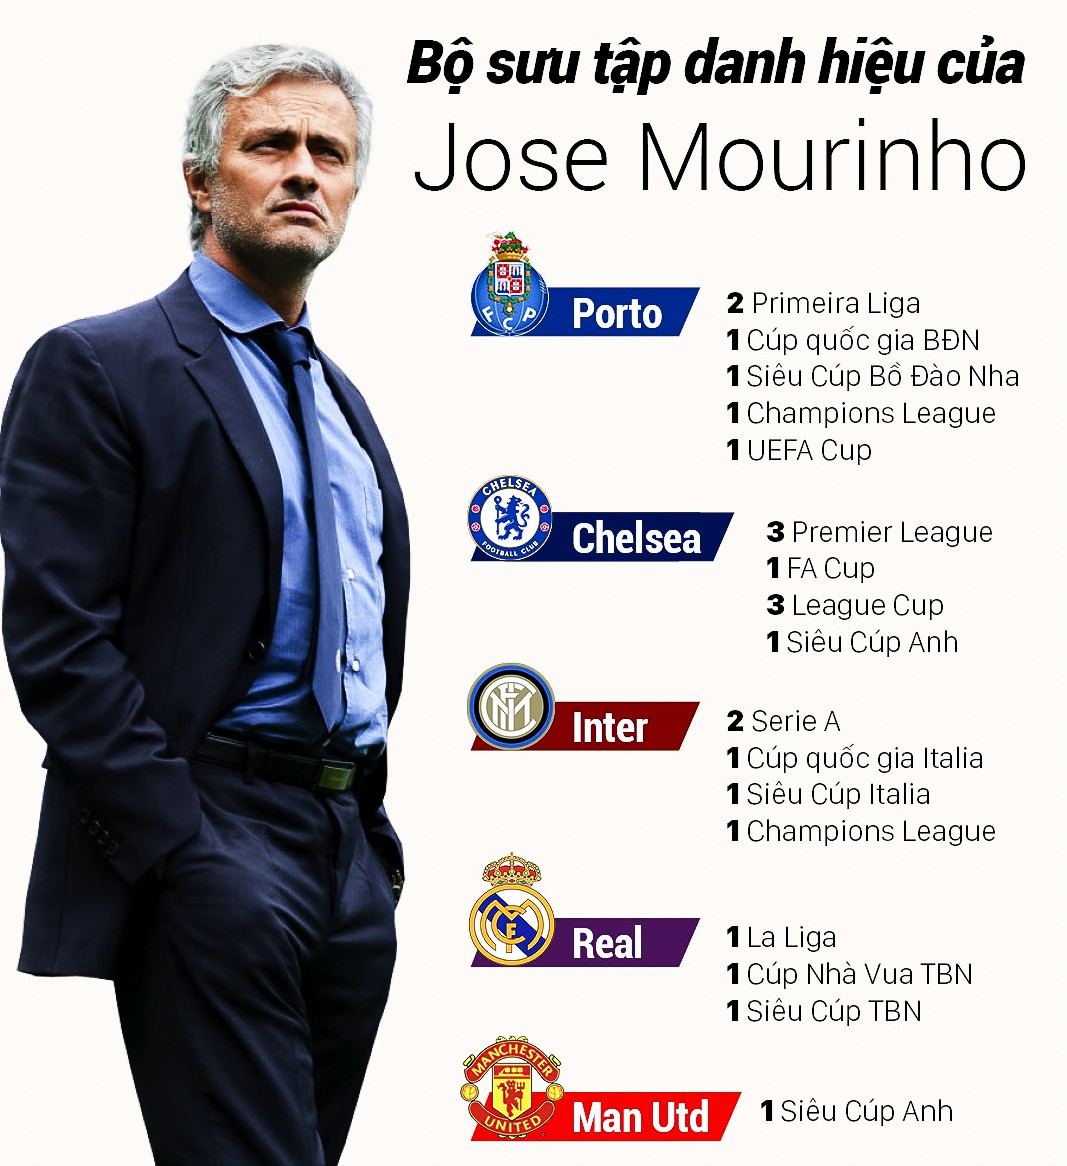 Mourinho xứng danh Vua đấu Cúp